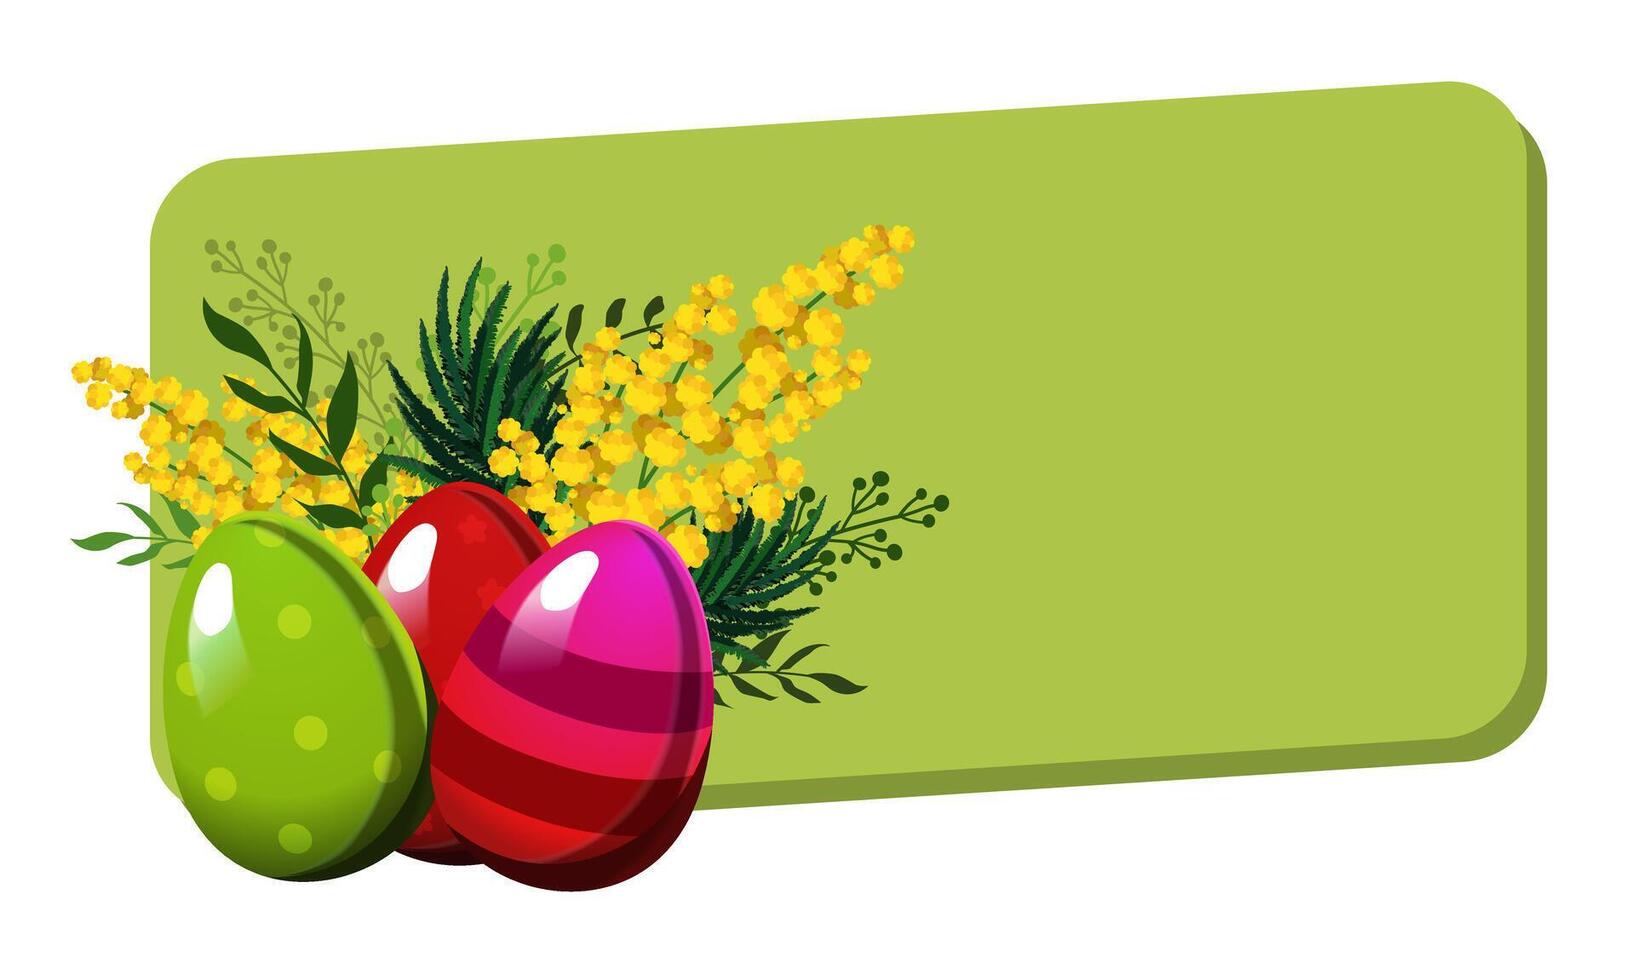 Pasen rechthoekig groen kader met rood en groen eieren en met bladeren, mimosa en tulpen. vector illustratie in vlak stijl. voorjaar clip art voor woorden, tekst, ontwerp van kaart, banier, folder, poster